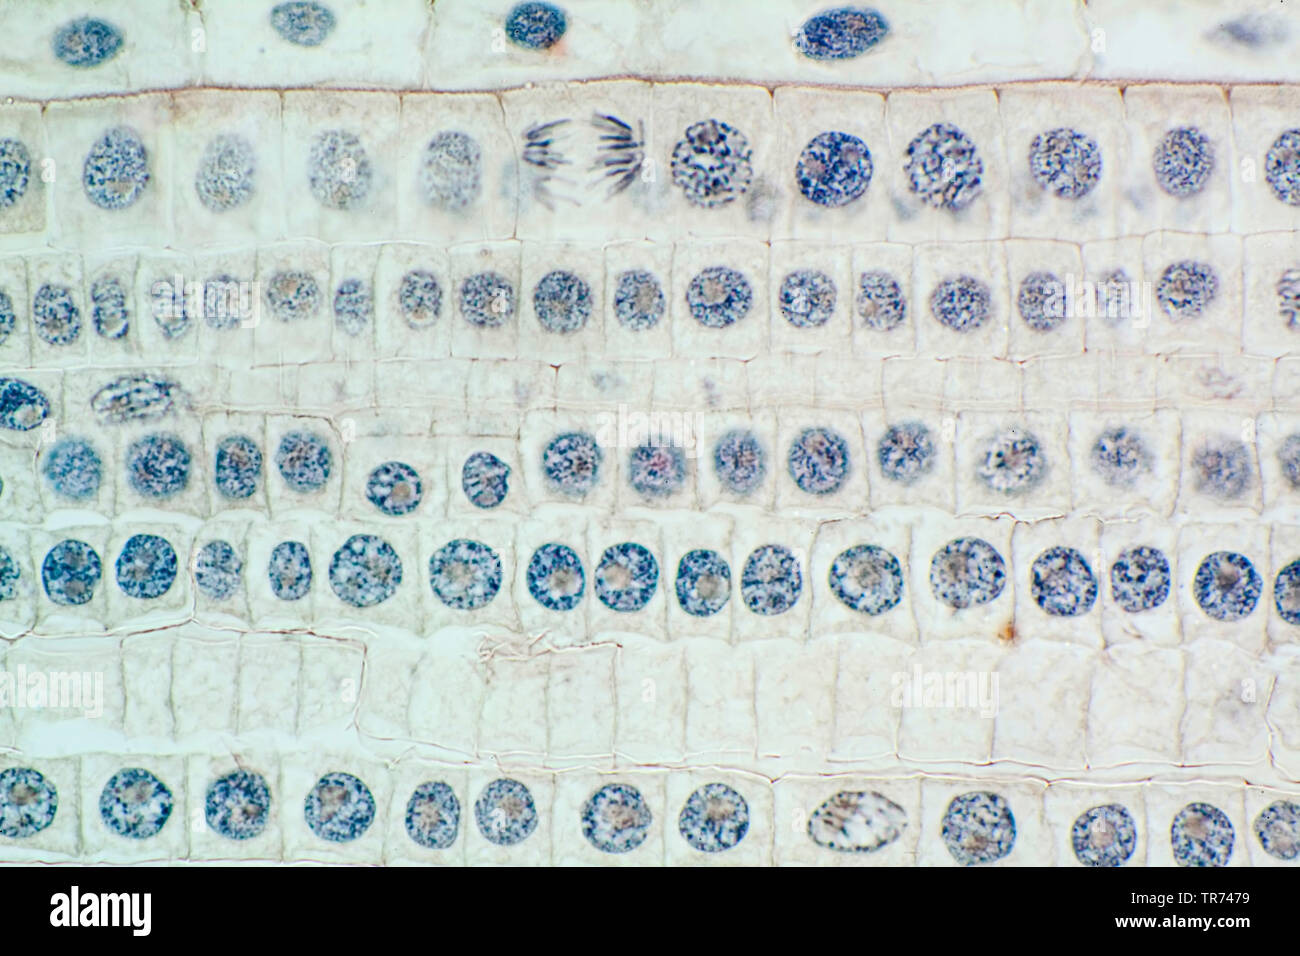 Garten, Zwiebel, Zwiebel Zwiebel, gemeinsame Zwiebel (Allium Cepa), Zelle Gewebe eines Gartens Zwiebel mit gefärbte Chromosomen, Lichtmikroskopie, x120, Deutschland Stockfoto